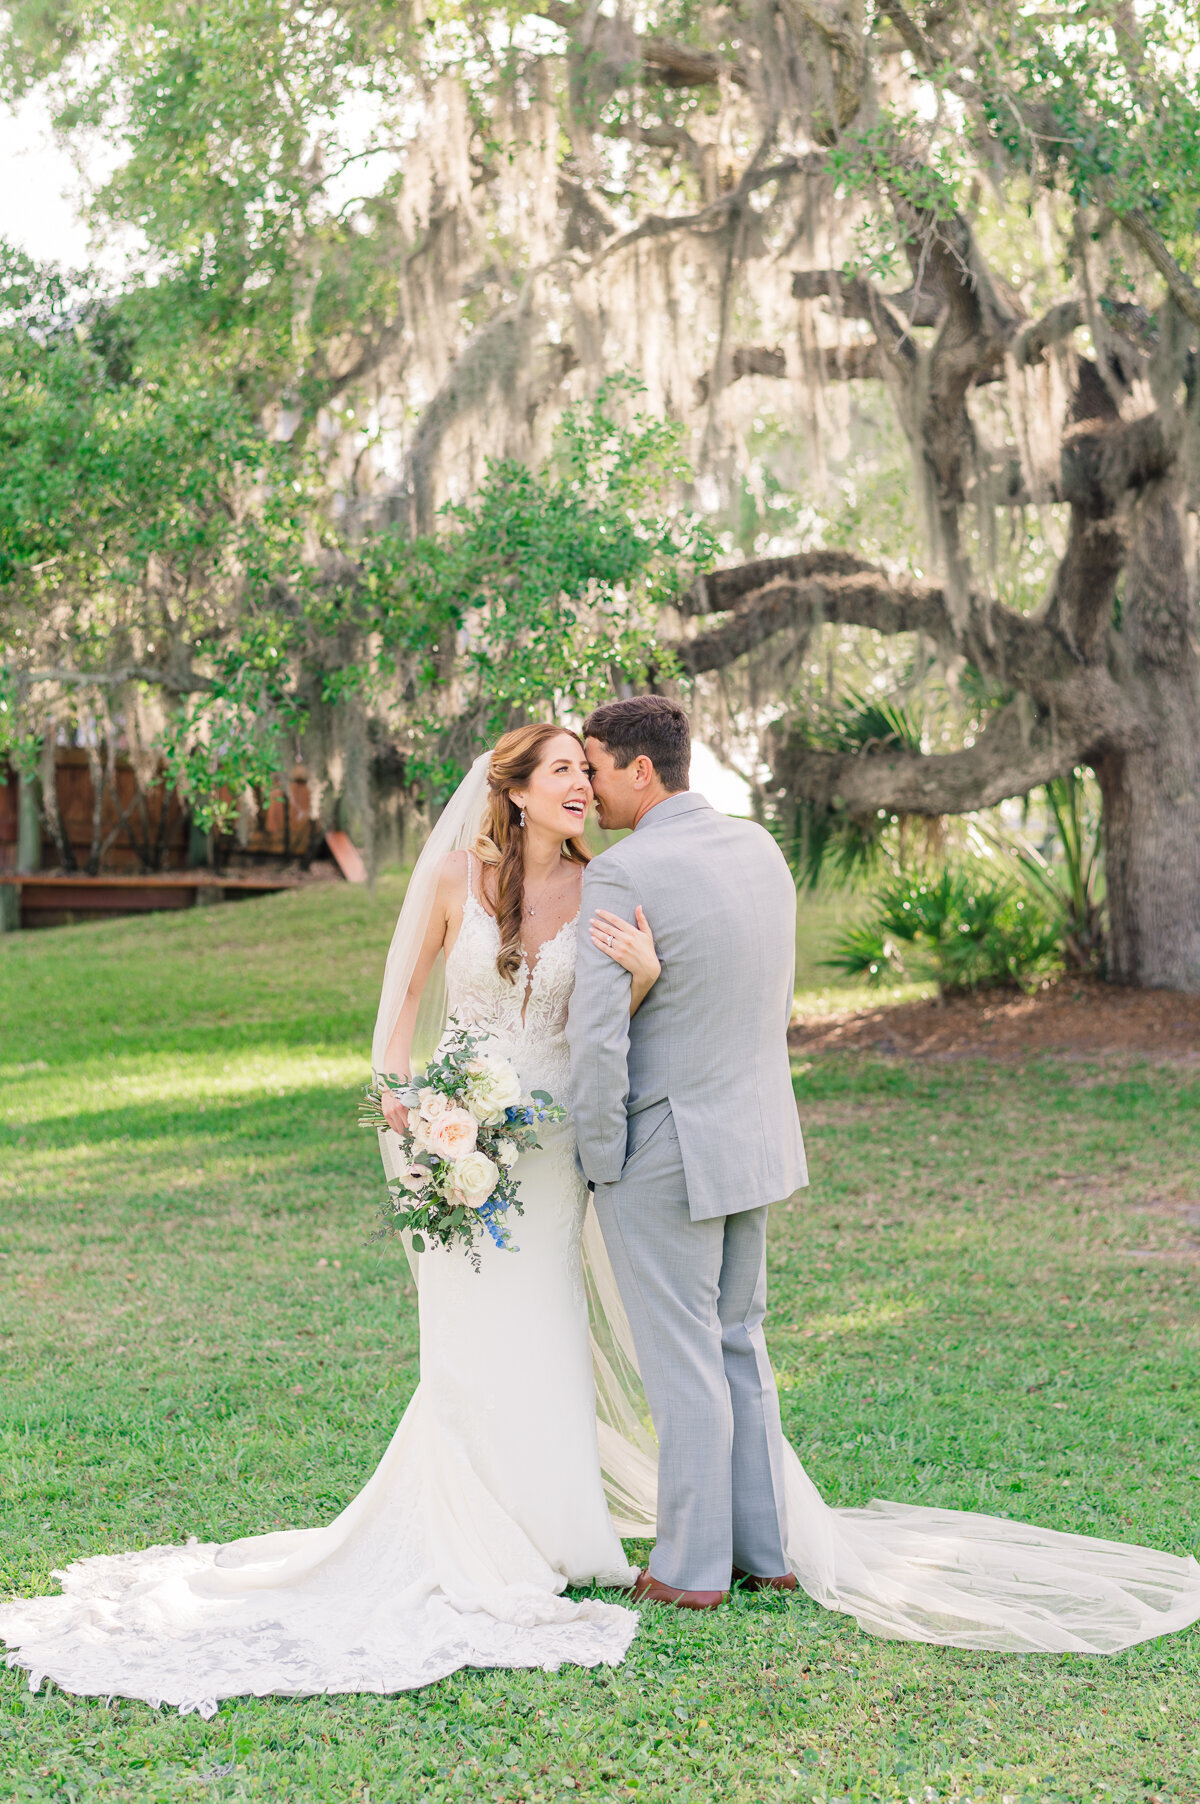 Erica & Ryan | Up the Creek Farms Wedding | Lisa Marshall Photography-44